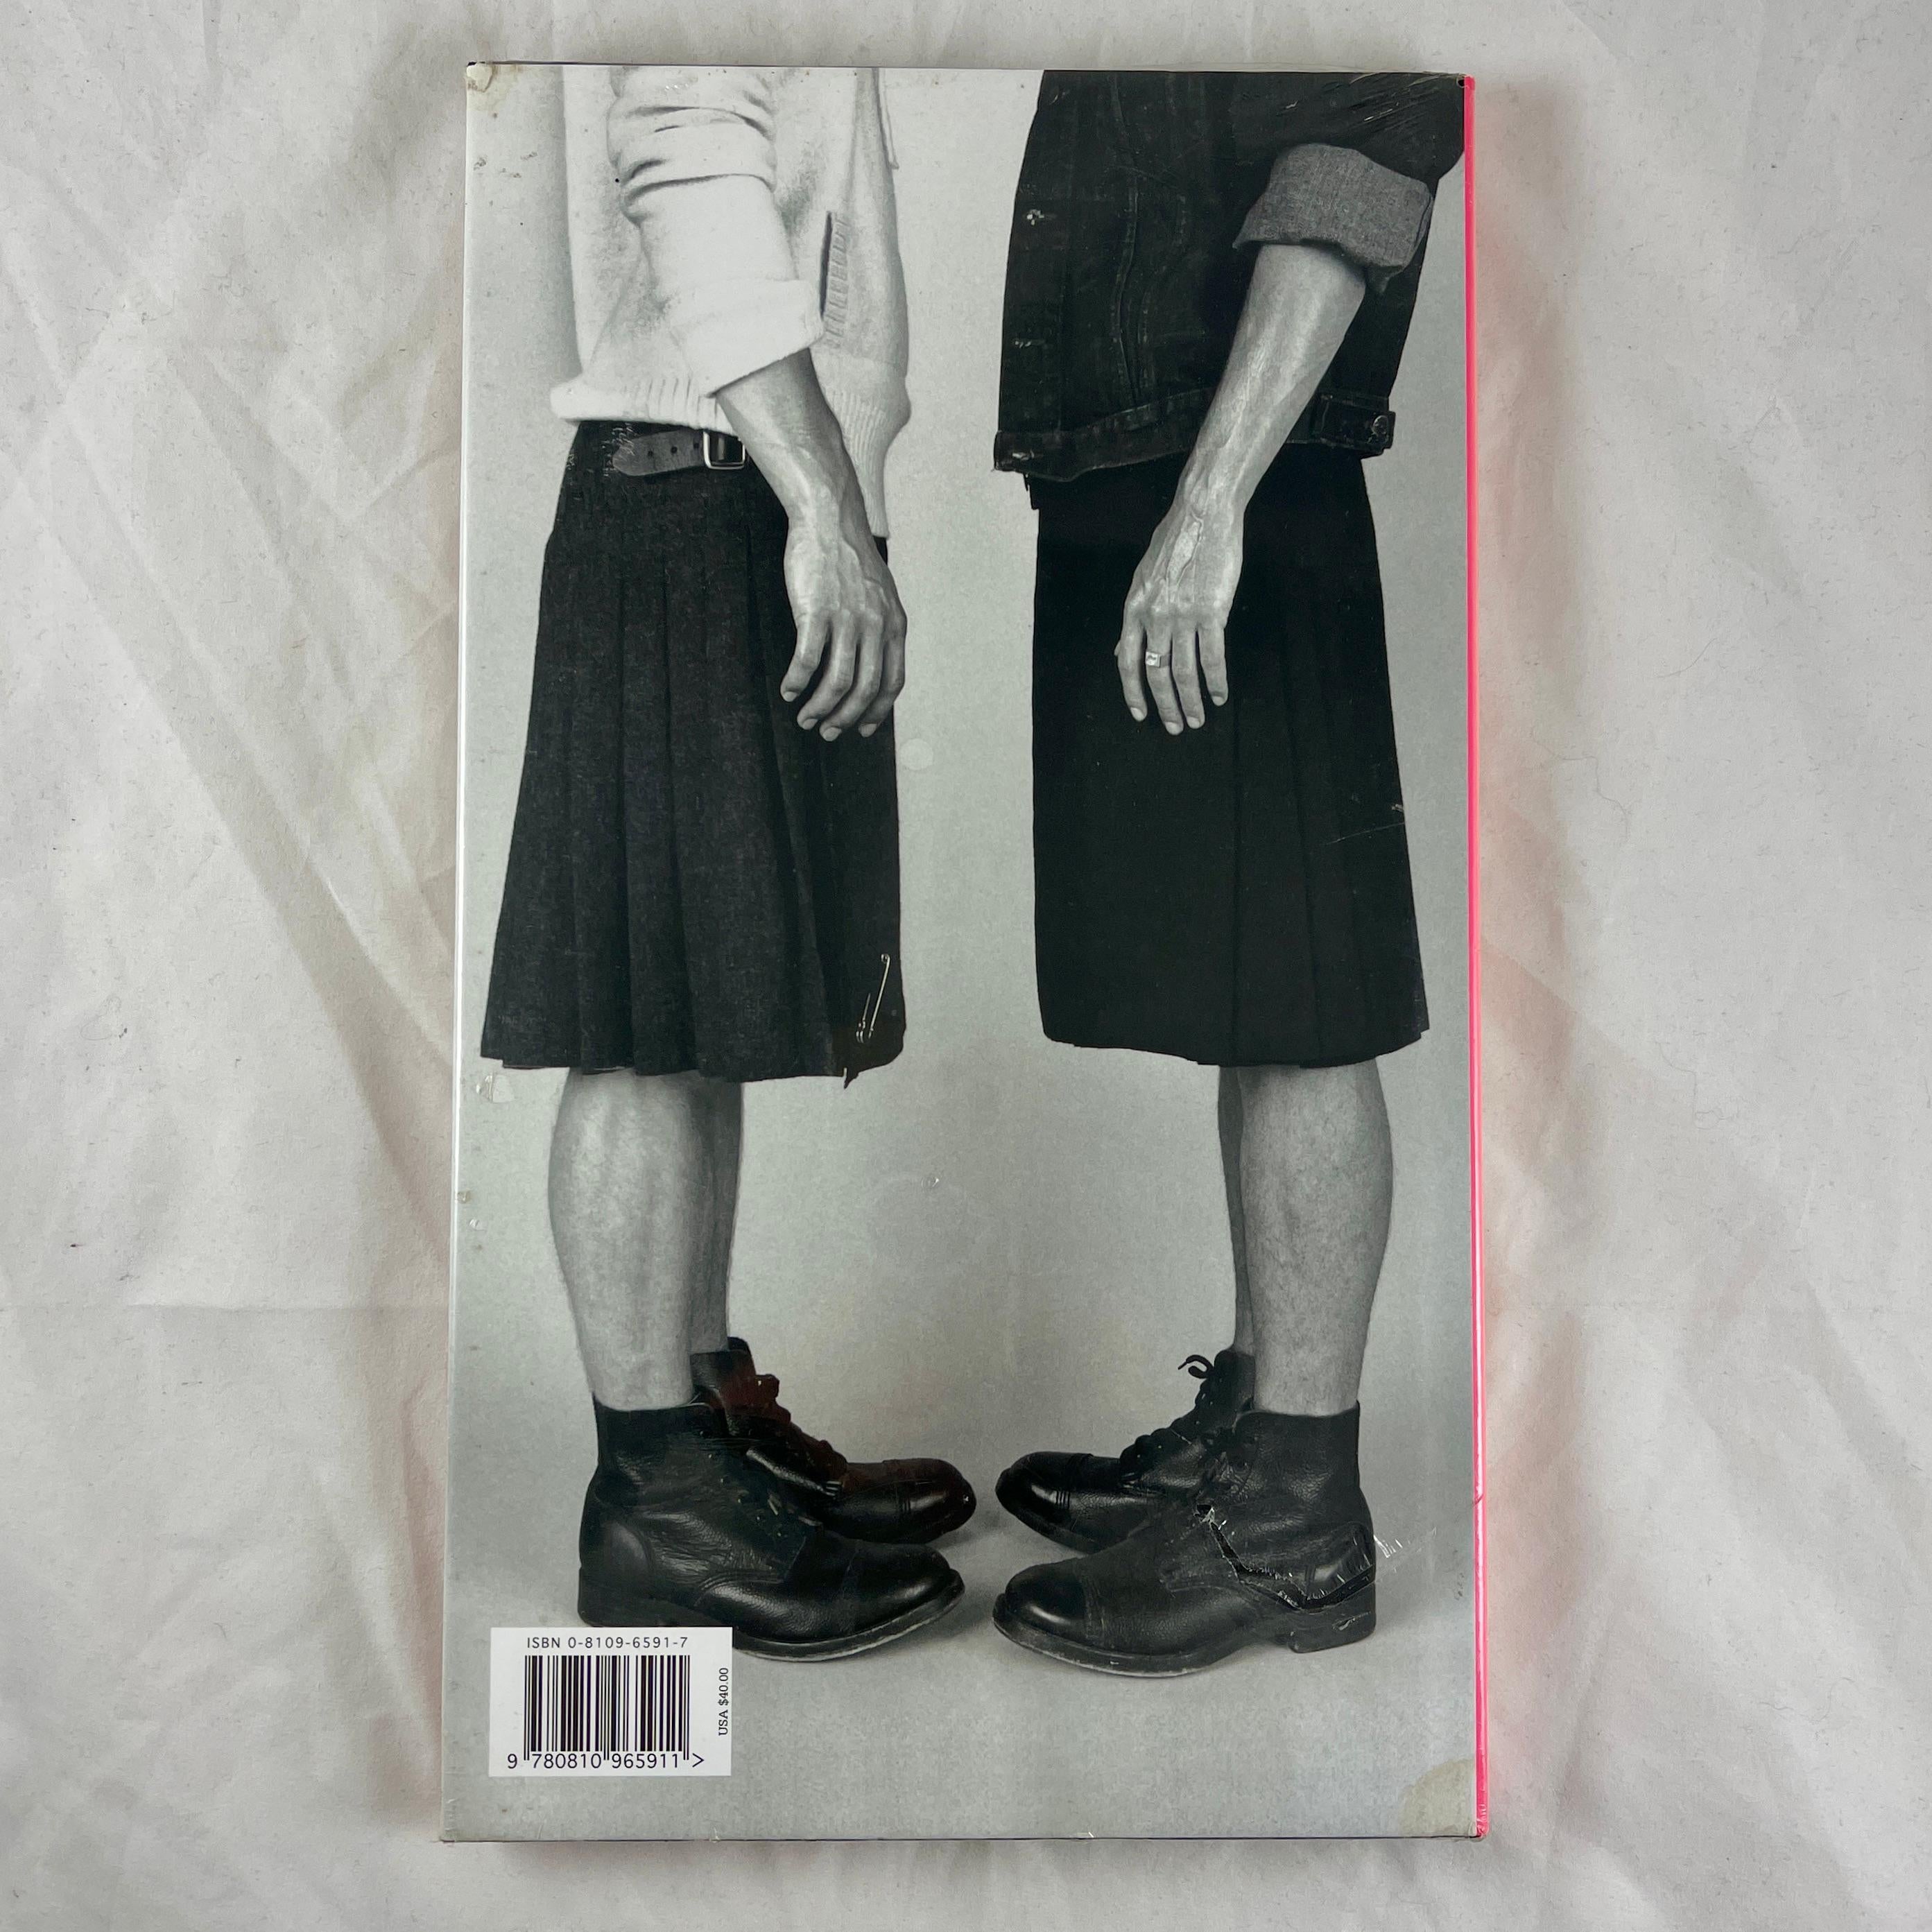 Anglais Bravehearts - Men In Skirts MOMA Costume Institute, 1ère édition rétrécie et emballée en vente